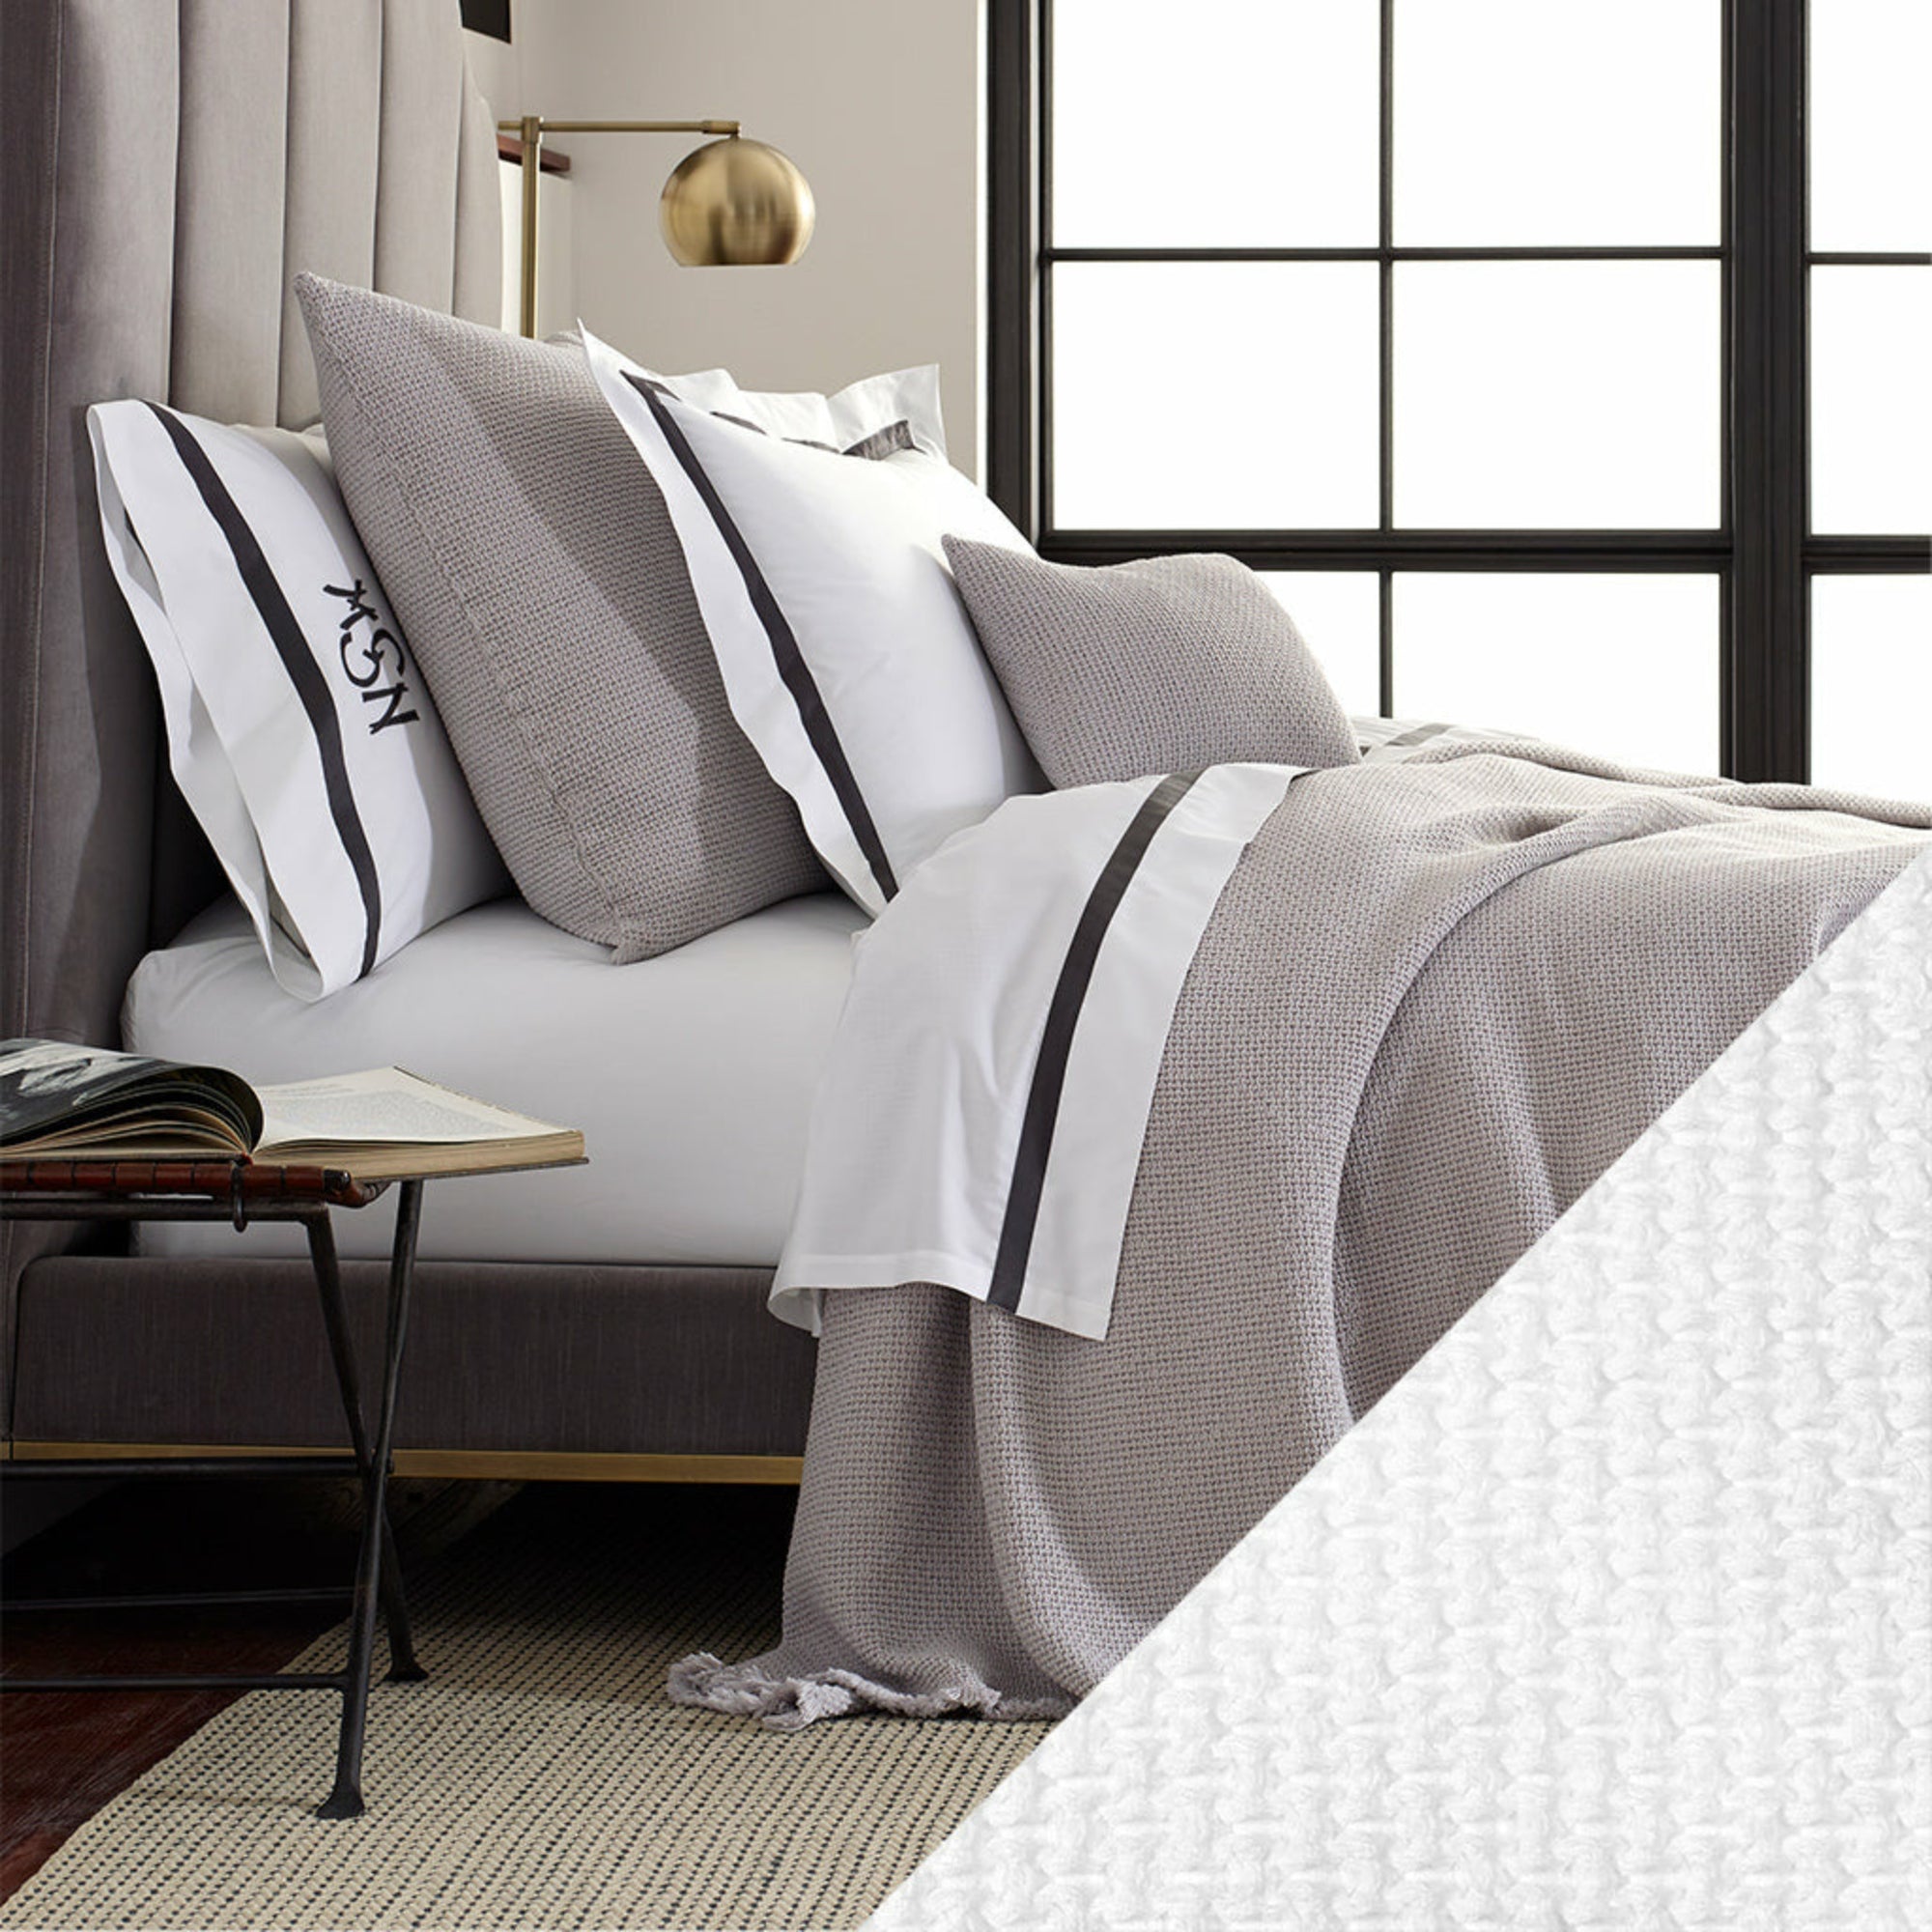 Matouk Selah Bedding Main White Fine Linens